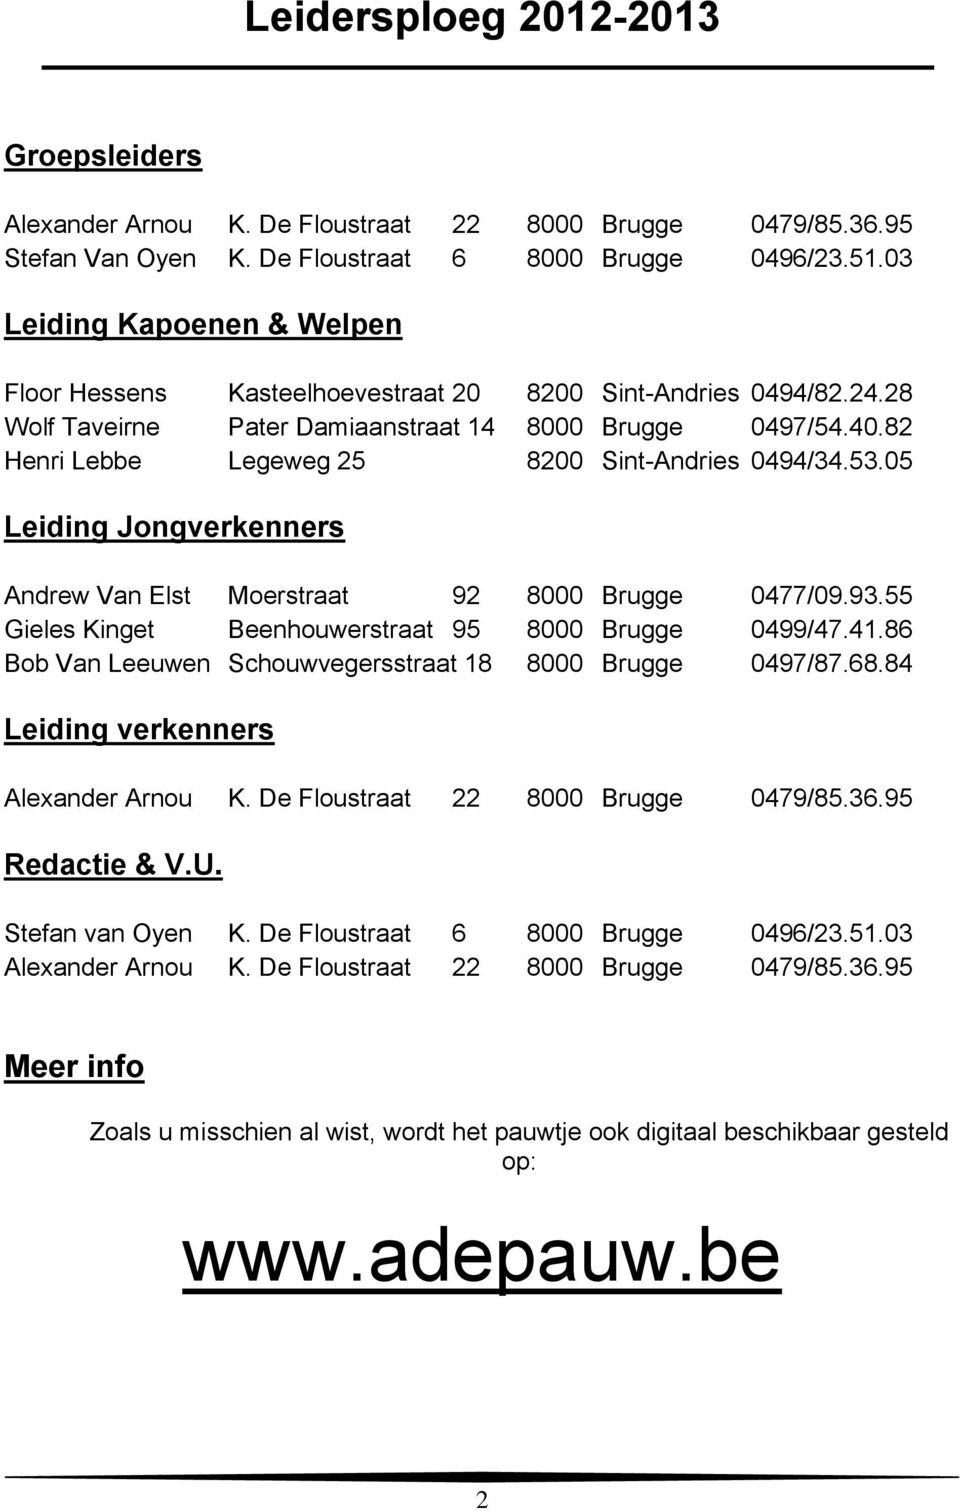 82 Henri Lebbe Legeweg 25 8200 Sint-Andries 0494/34.53.05 Leiding Jongverkenners Andrew Van Elst Moerstraat 92 8000 Brugge 0477/09.93.55 Gieles Kinget Beenhouwerstraat 95 8000 Brugge 0499/47.41.